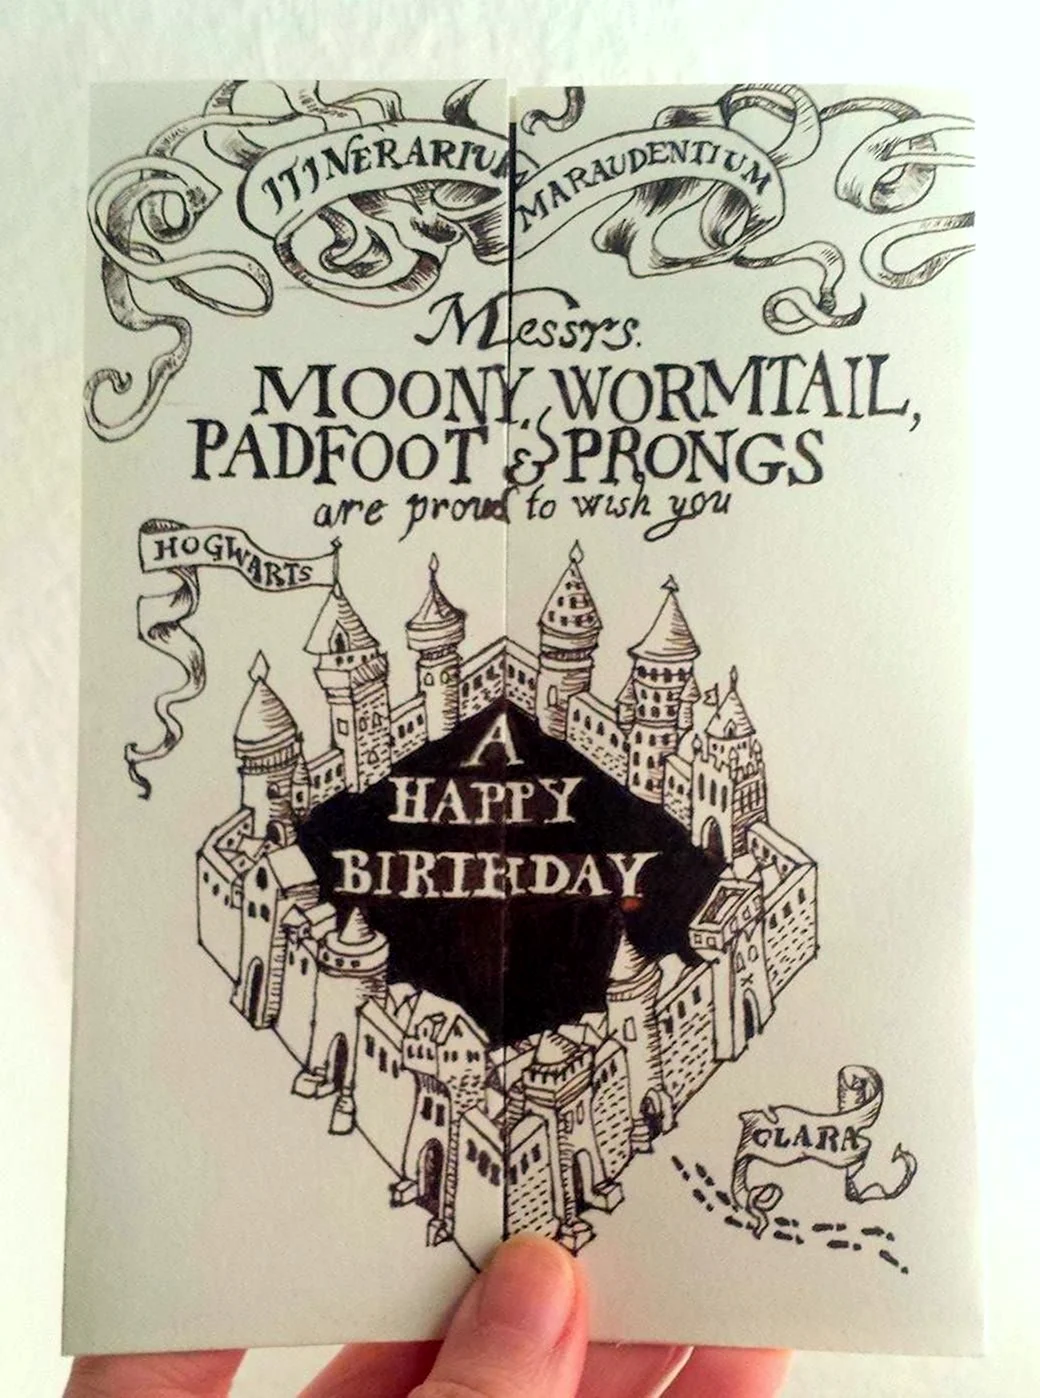 Гарри Поттер с днем рождения открытка